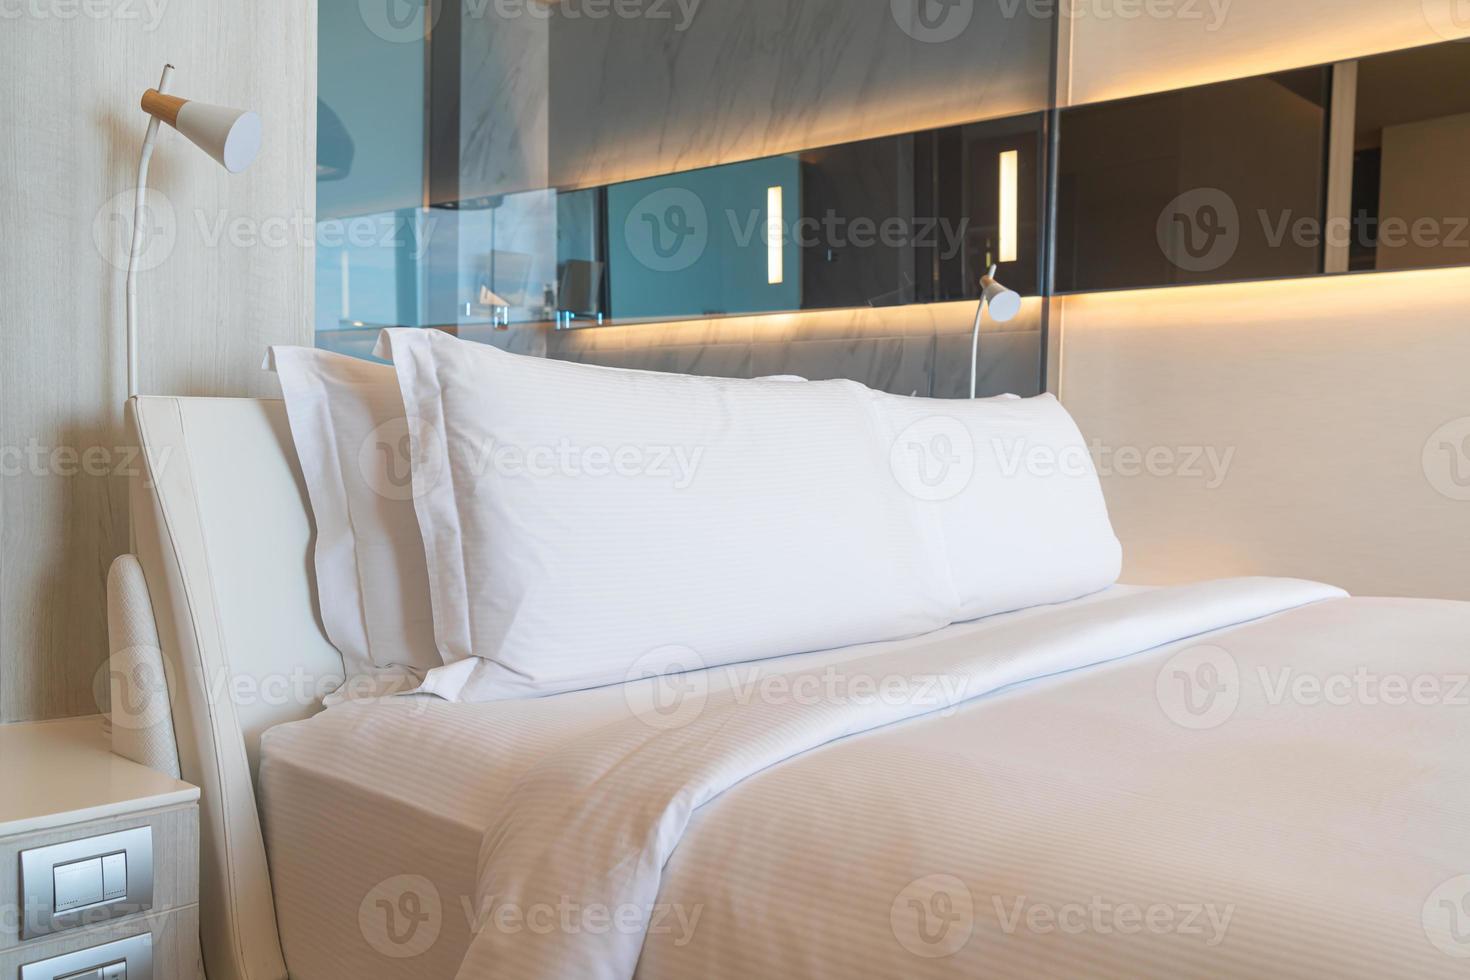 vita bekväma kuddar dekoration på sängen foto